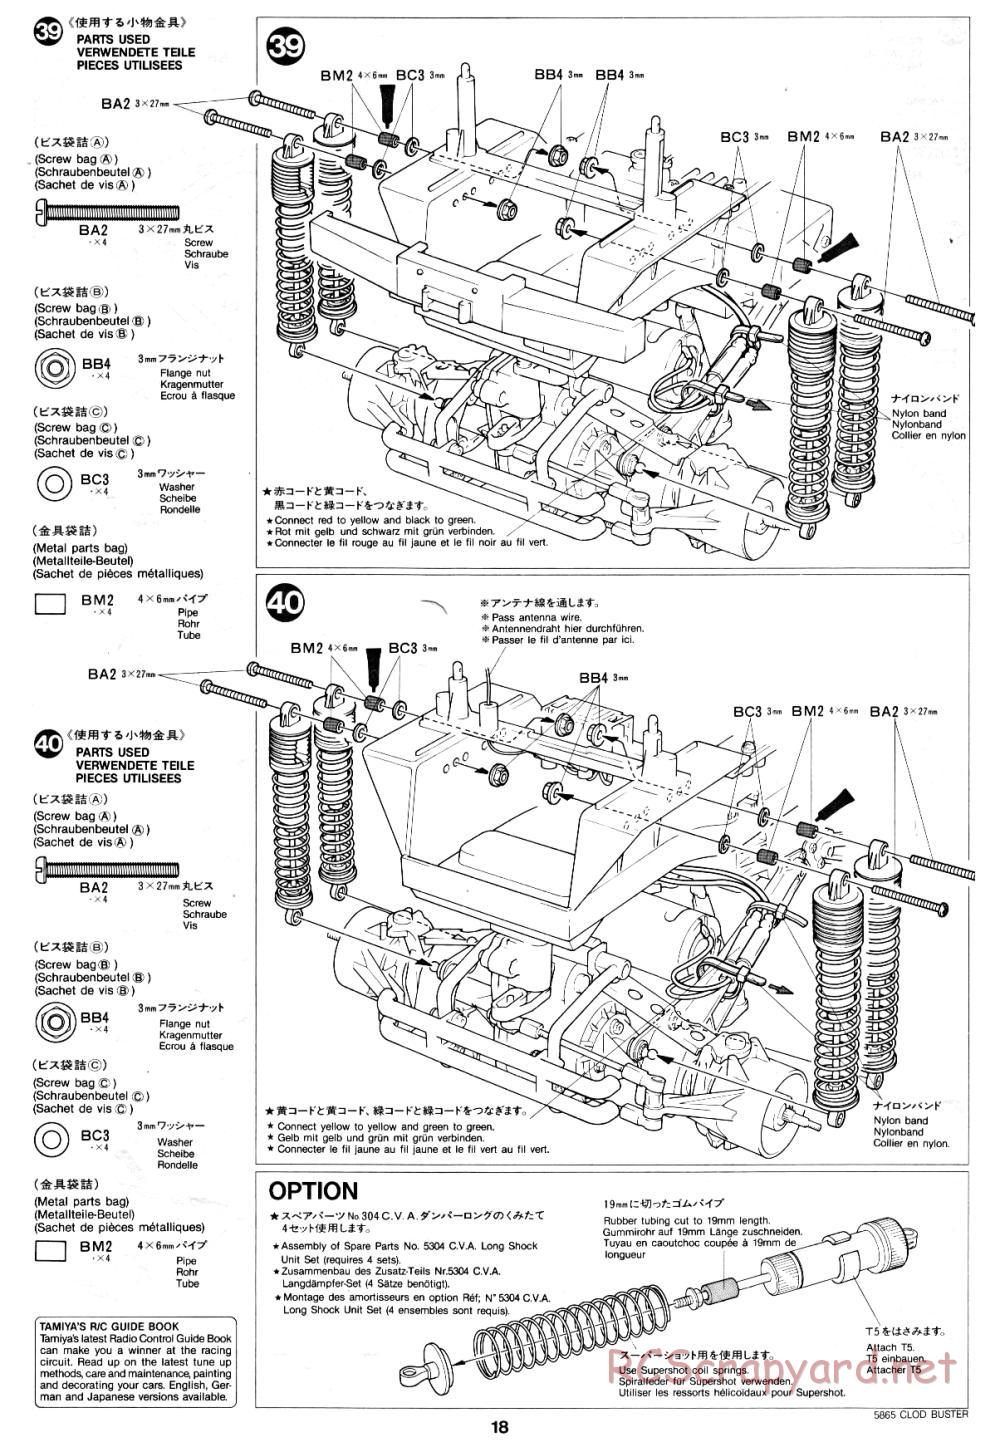 Tamiya - Clod Buster - 58065 - Manual - Page 18